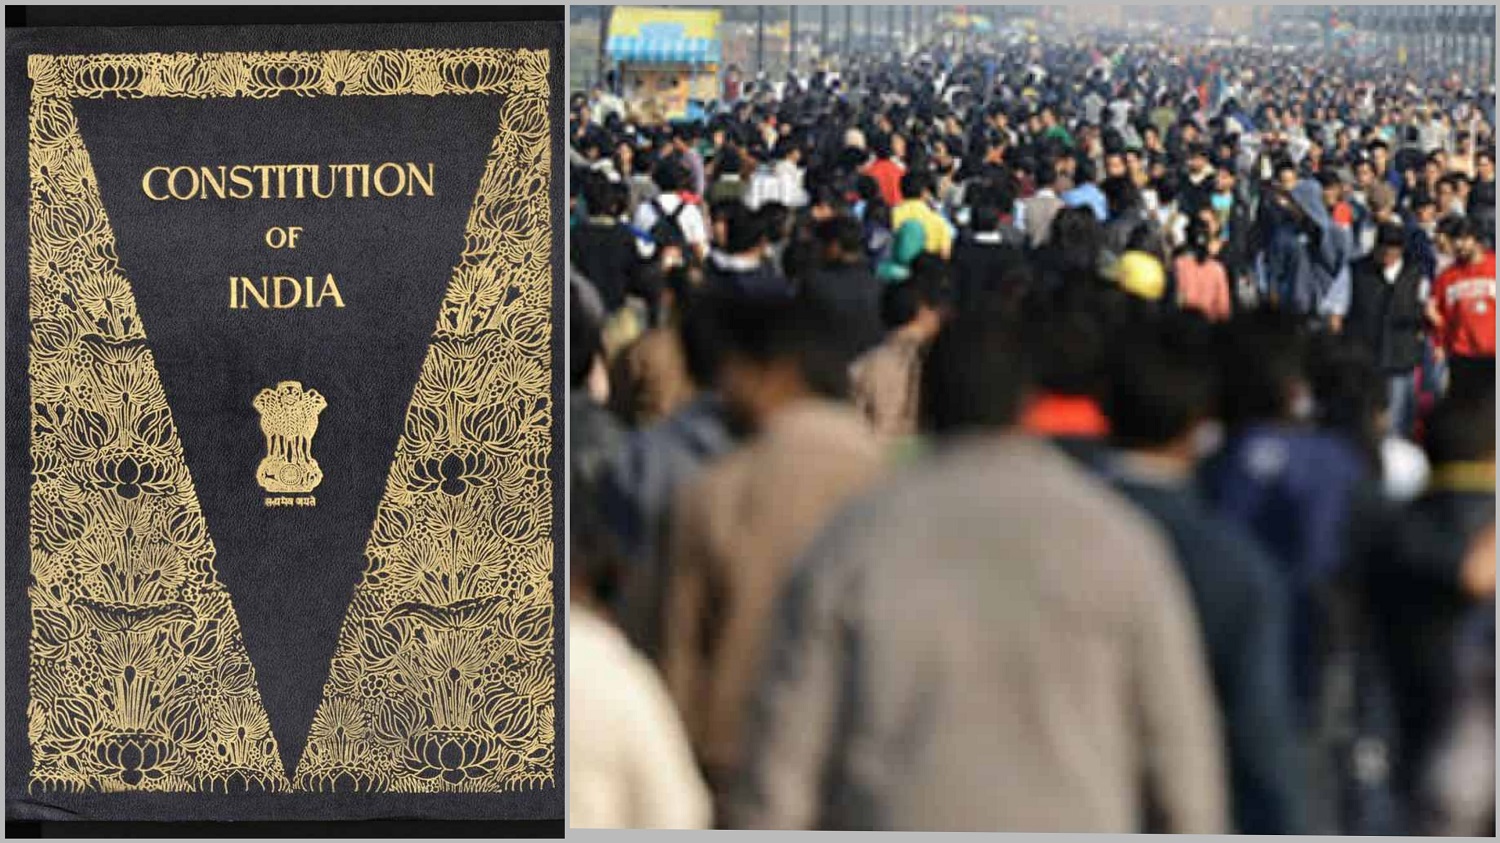 क्यों आबादी को नियंत्रित करने से जुड़ा क़ानून संविधान के मौलिक अधिकार के ख़िलाफ़ है?